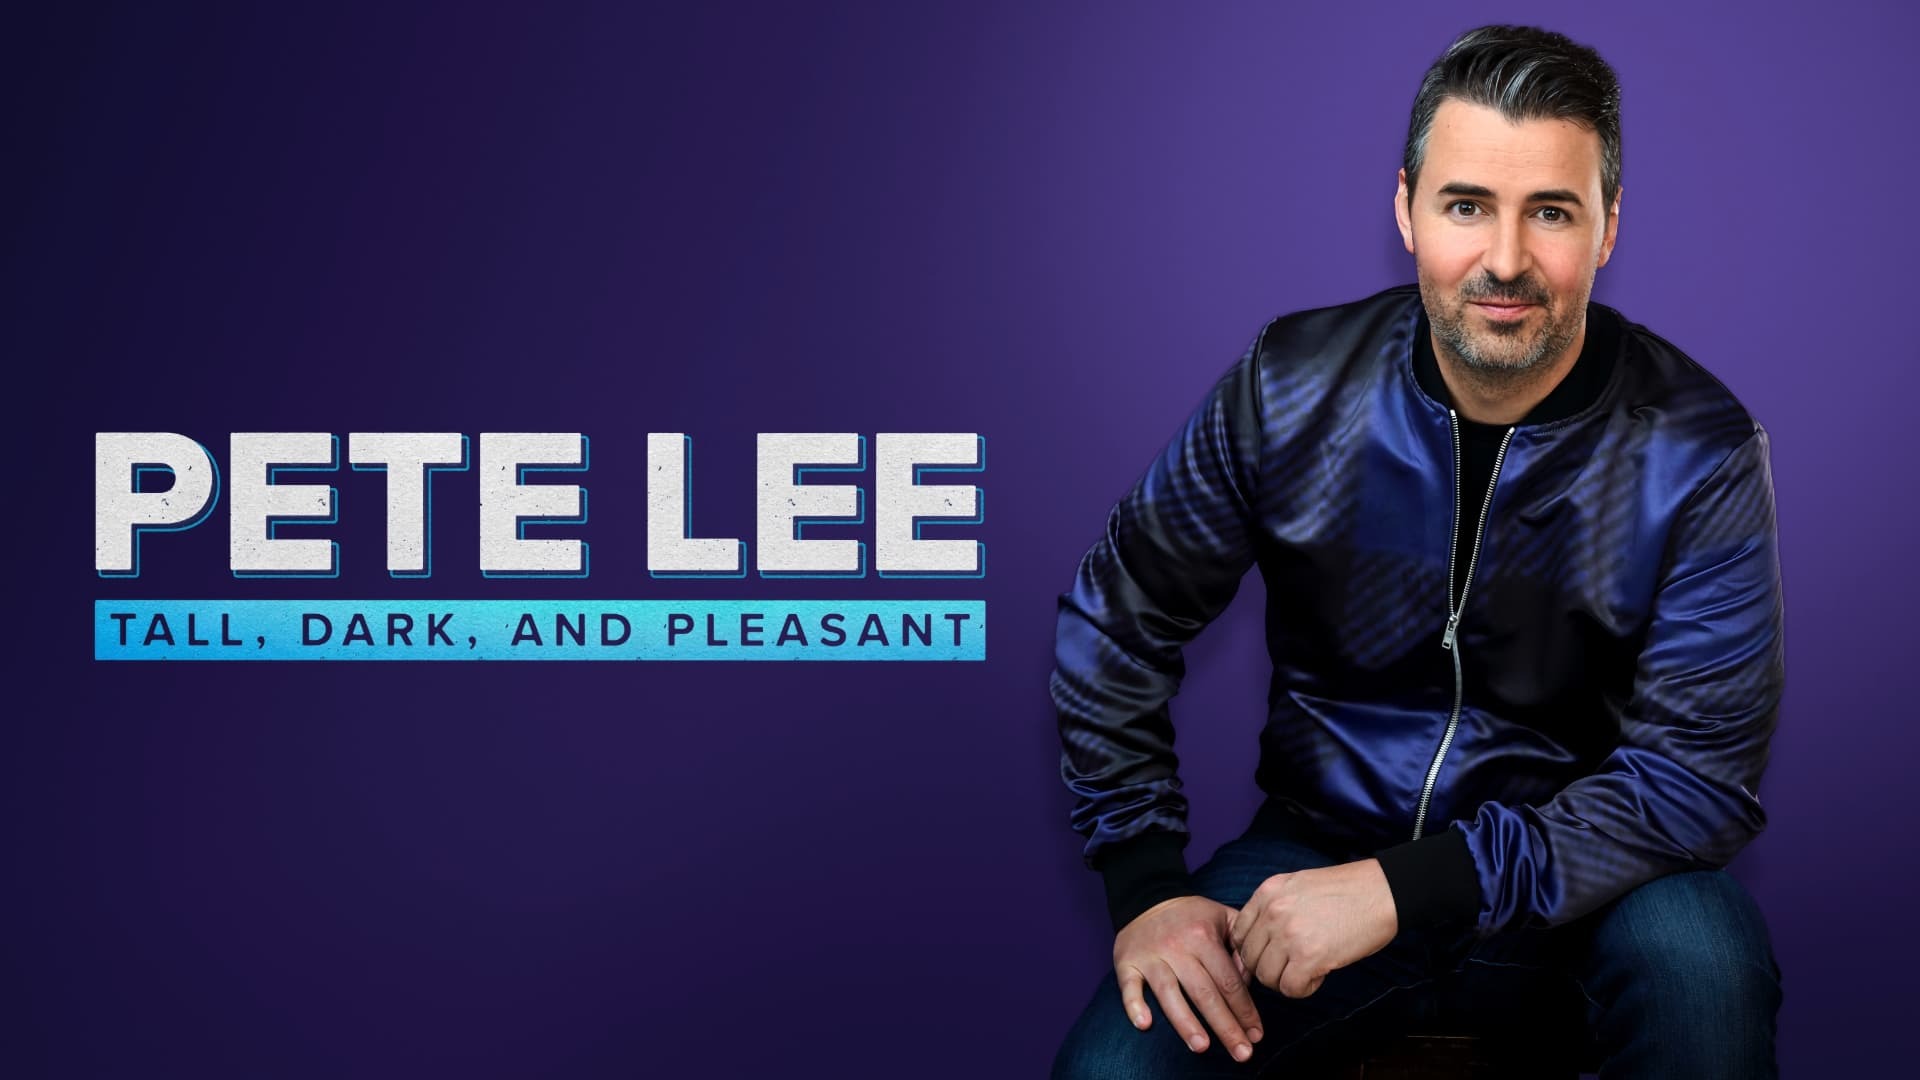 პიტ ლი: მაღალი, შავგვრემანი და სასიამოვნო / Pete Lee: Tall, Dark and Pleasant